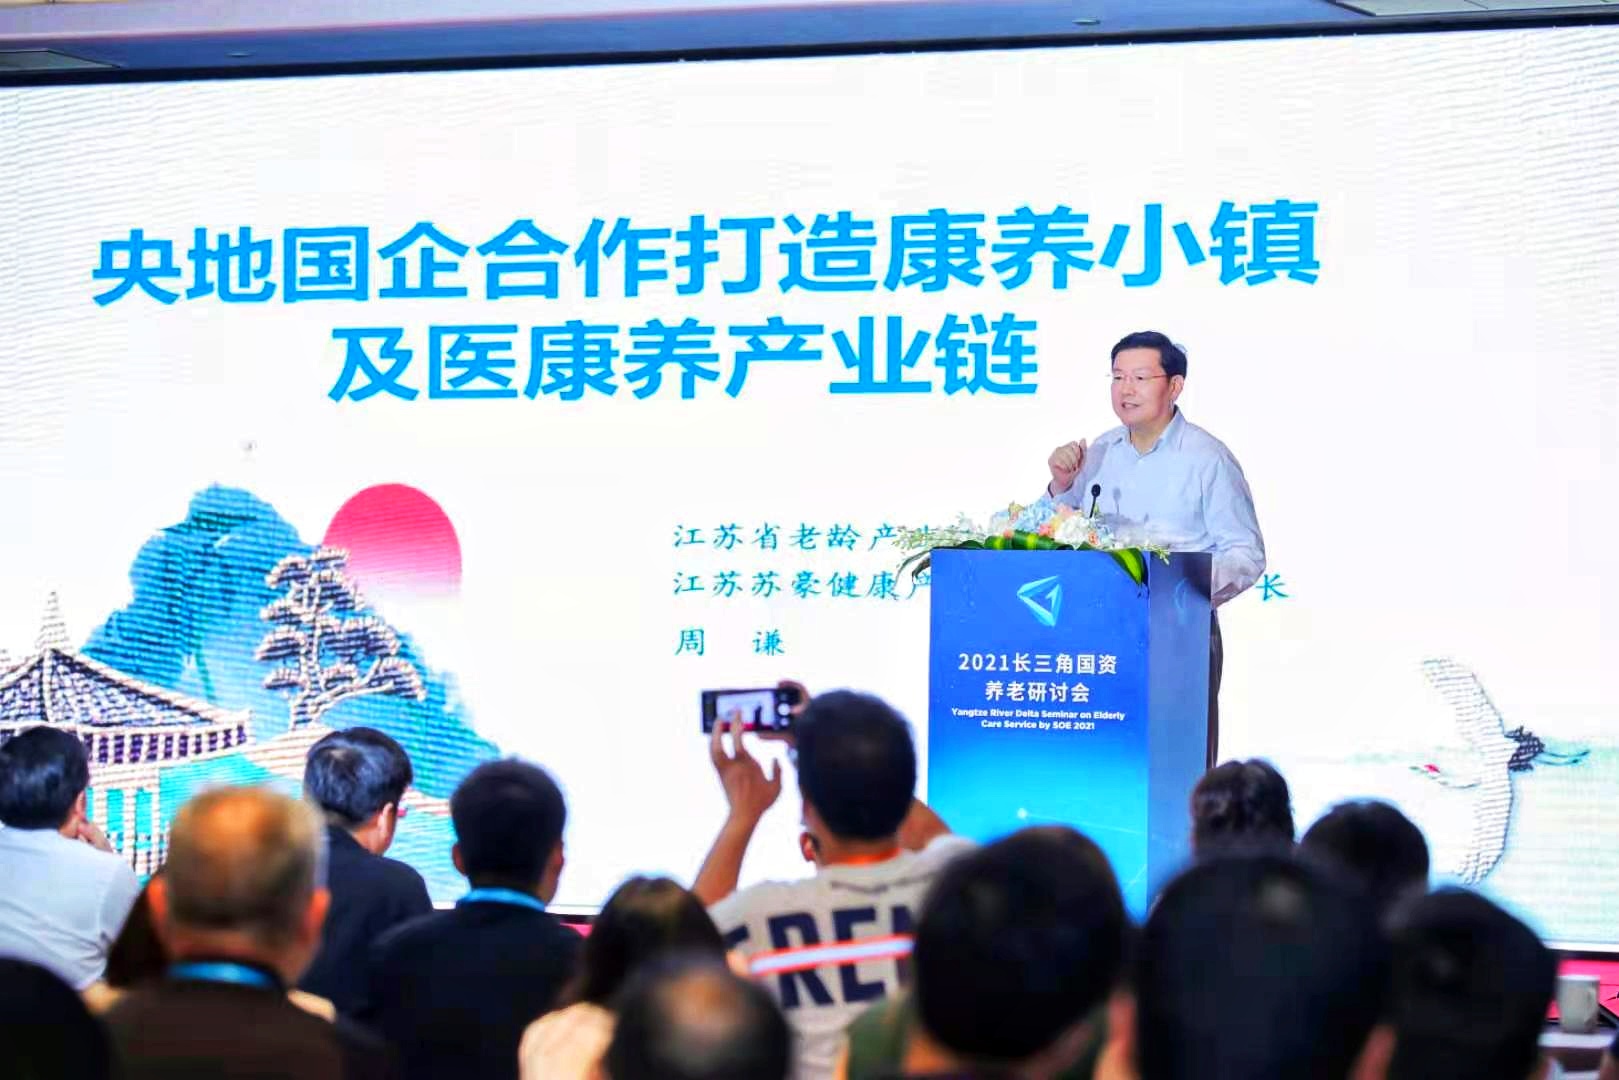 苏豪控股集团副总裁周谦带队参加2021上海老博会